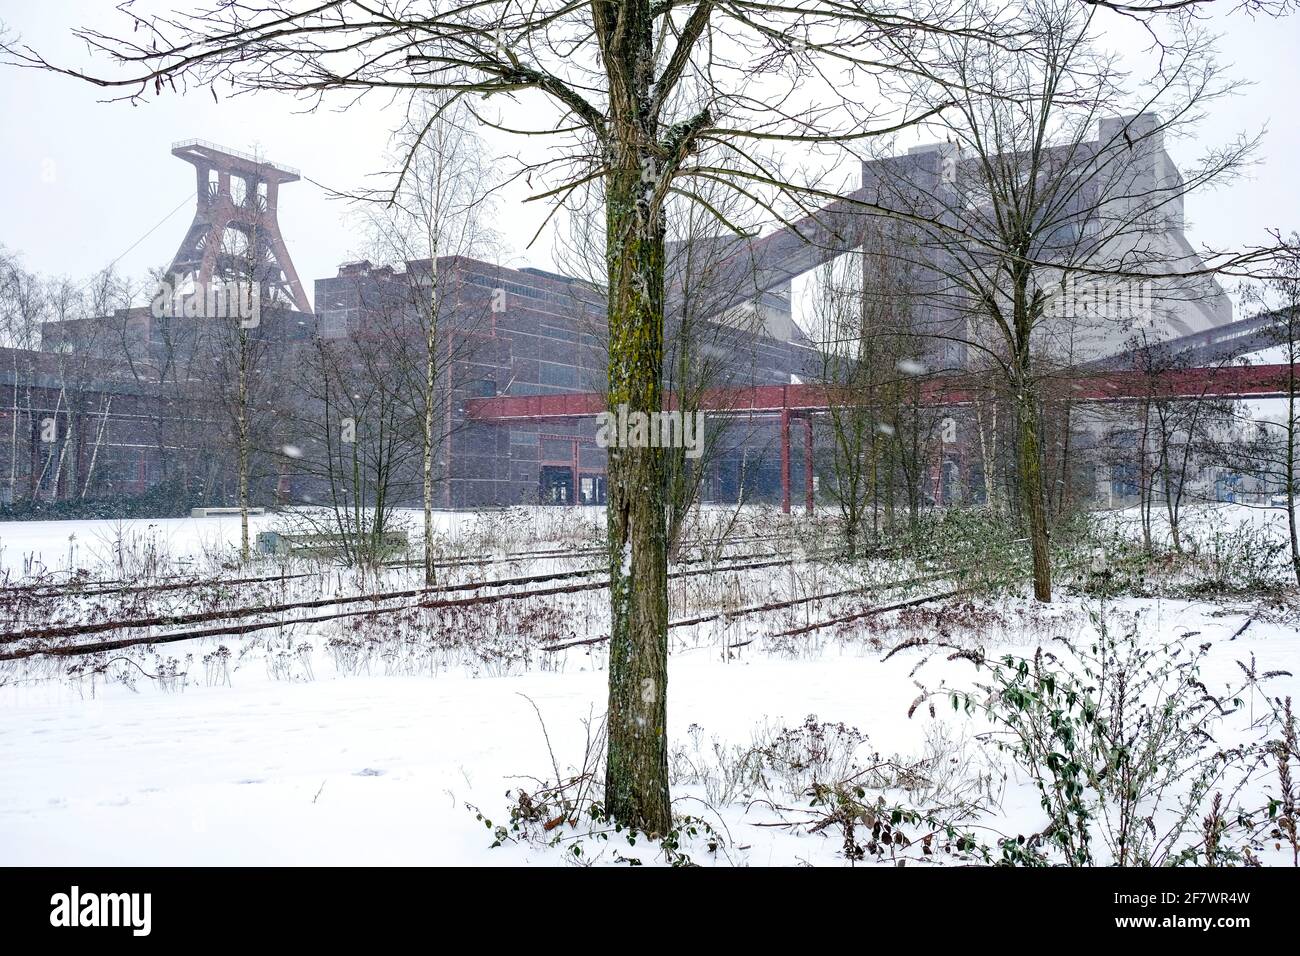 07.02.2021, Essen, Nordrhein-Westfalen, Deutschland - Zeche Zollverein im Schnee Stock Photo